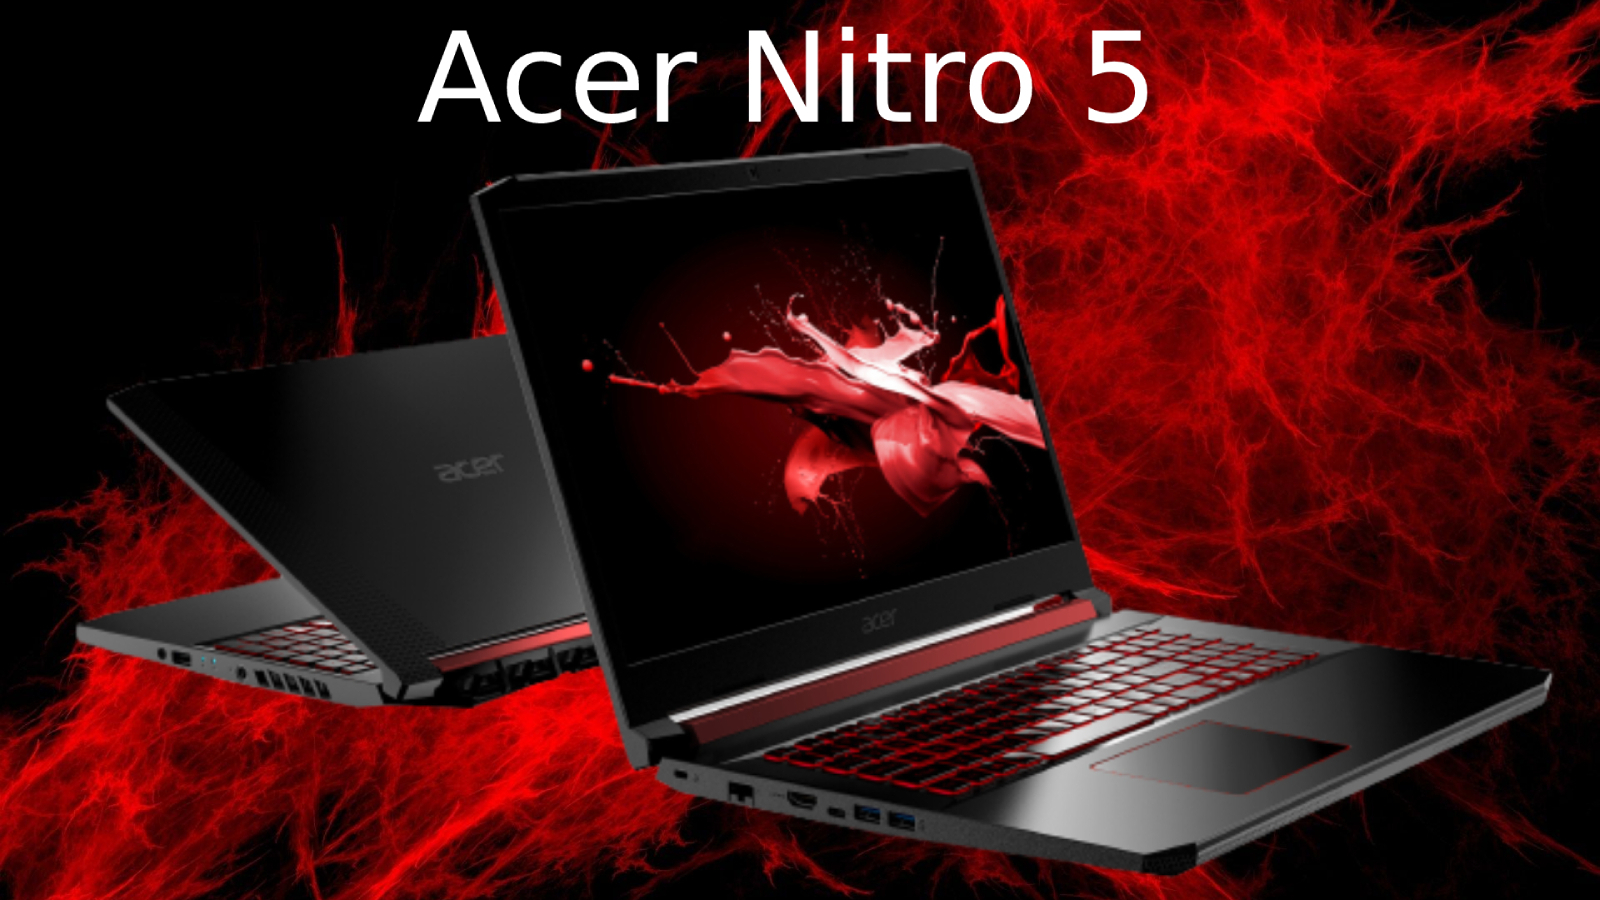 Bạn đang tìm kiếm chiếc laptop chơi game đỉnh cao với giá cả hợp lý? Acer Nitro 5 luôn sẵn sàng đáp ứng nhu cầu giải trí và làm việc của bạn với cấu hình mạnh mẽ và thiết kế đẹp mắt.